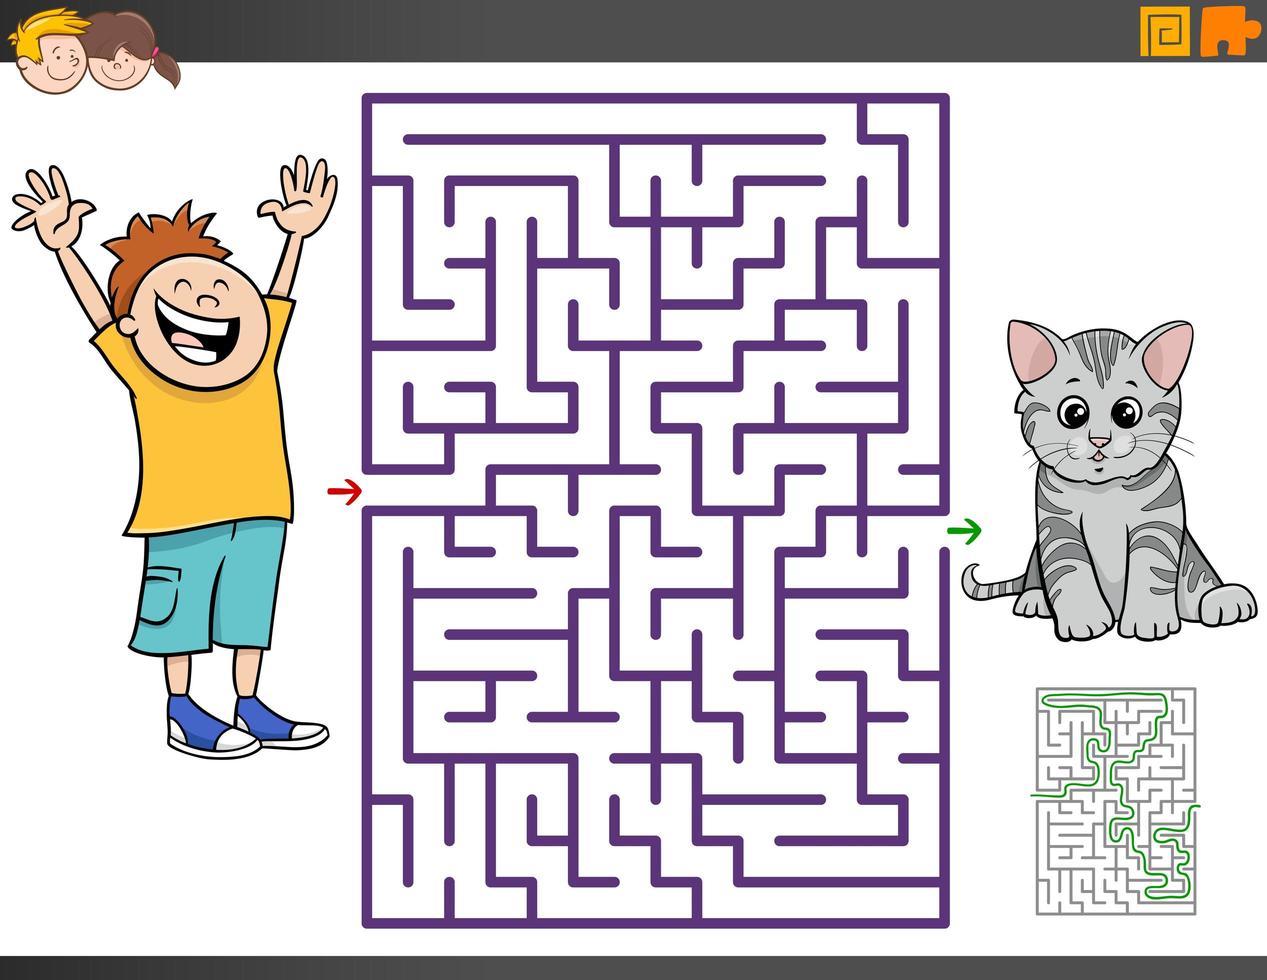 jeu éducatif de labyrinthe avec une fille de dessin animé et un sac à dos  2767182 Art vectoriel chez Vecteezy